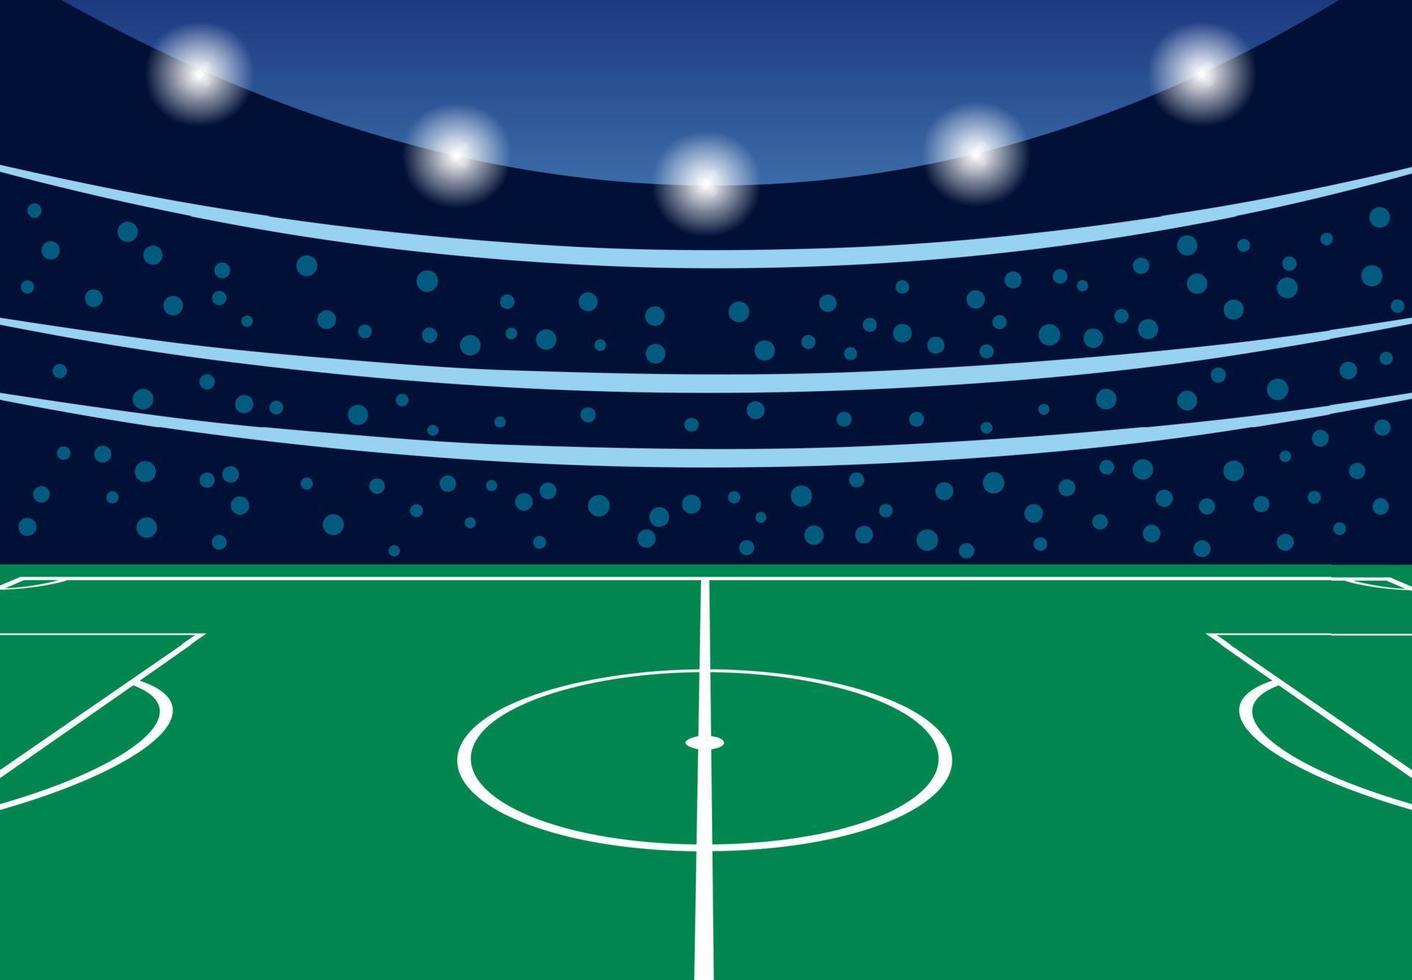 estádio de futebol com tribunas lotadas na noite anterior ao início da partida. ilustração vetorial vetor